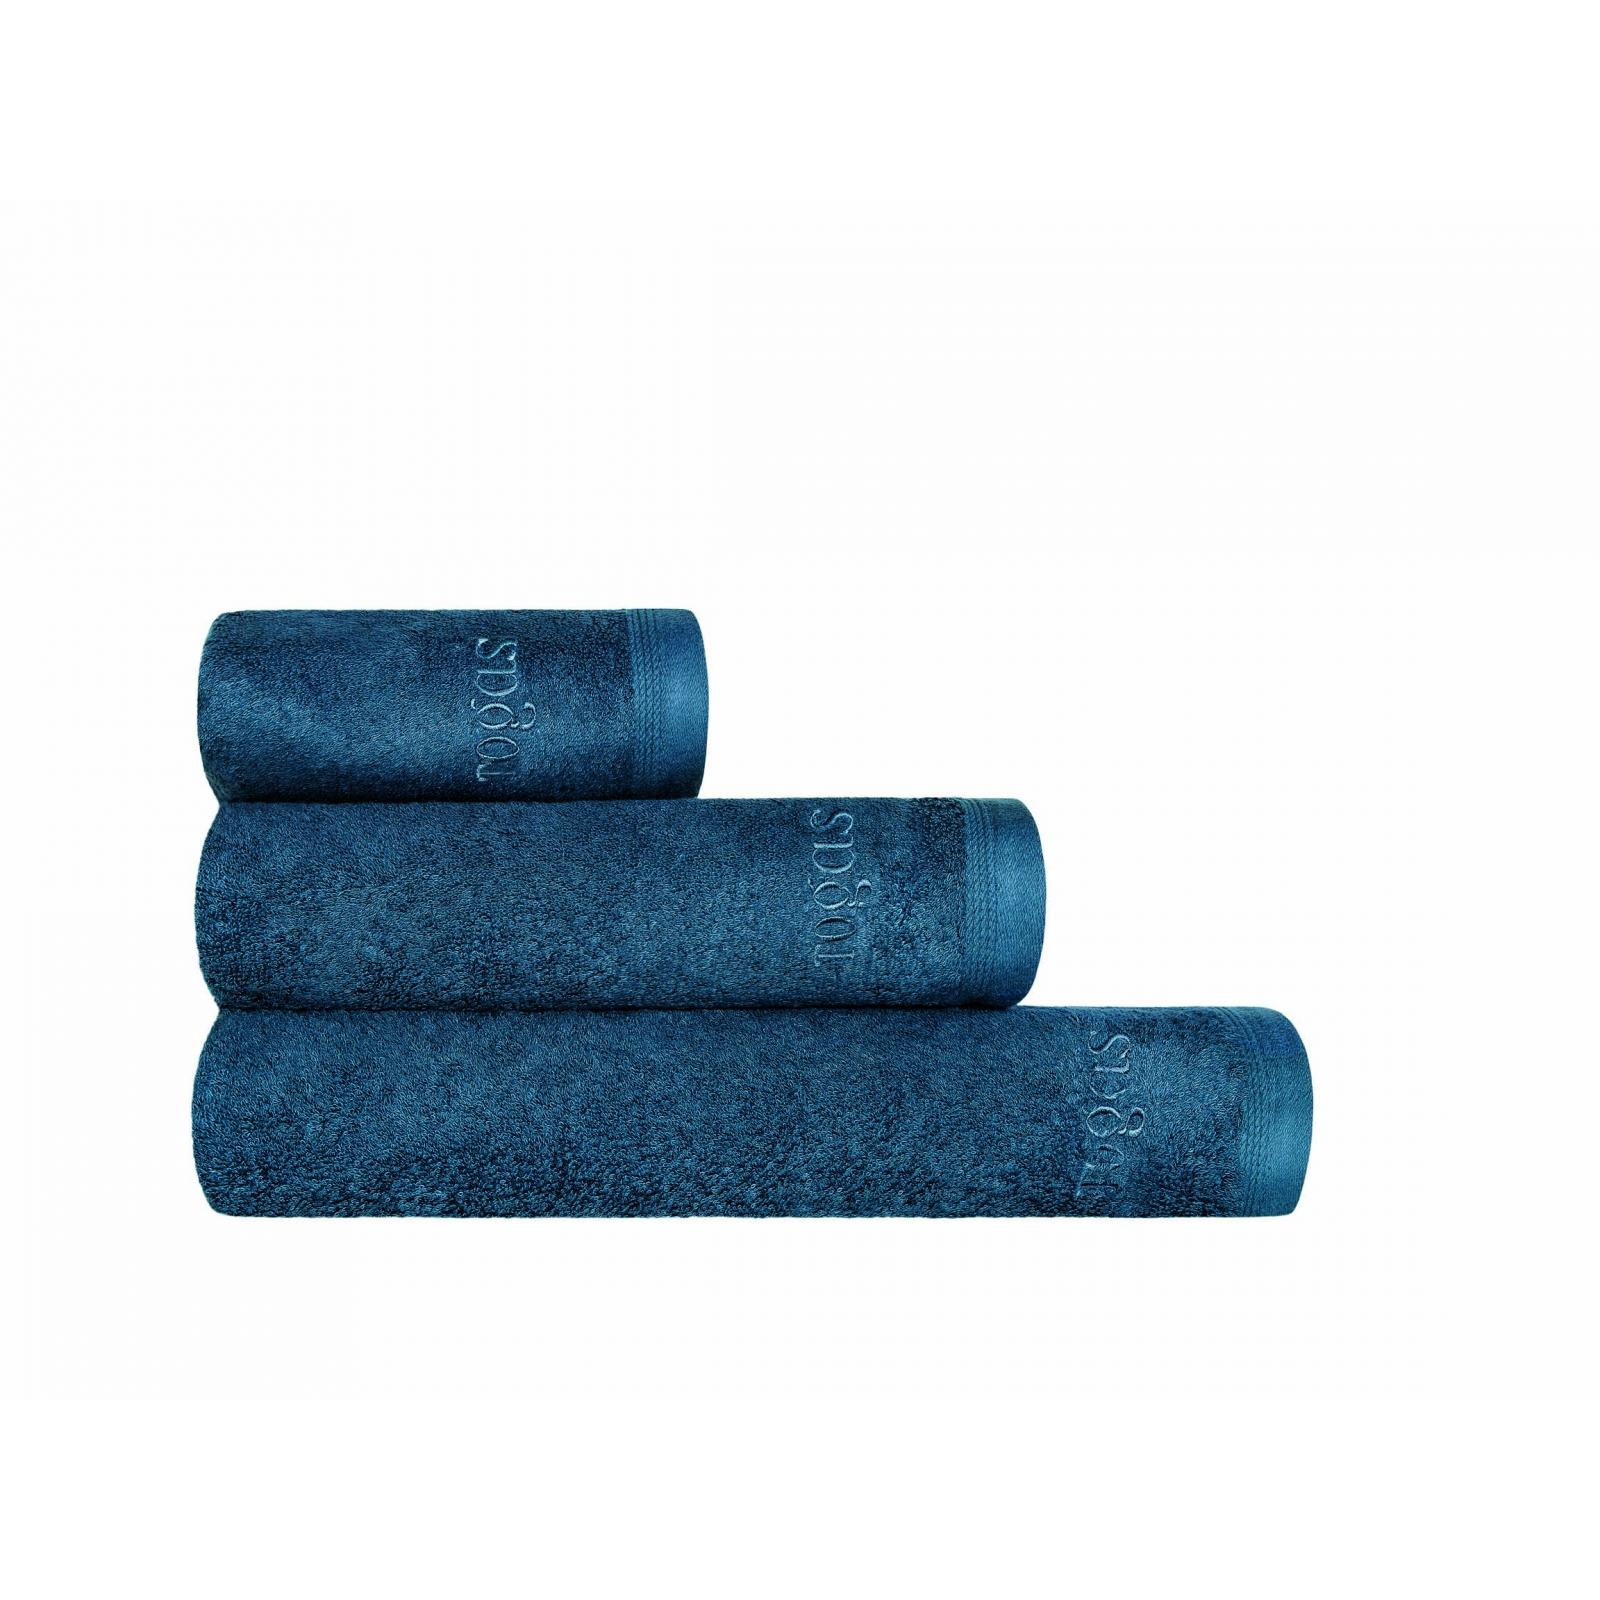 Полотенце Togas Пуатье темно-синее 40х60 см полотенце togas пуатье темно синее 40х60 см